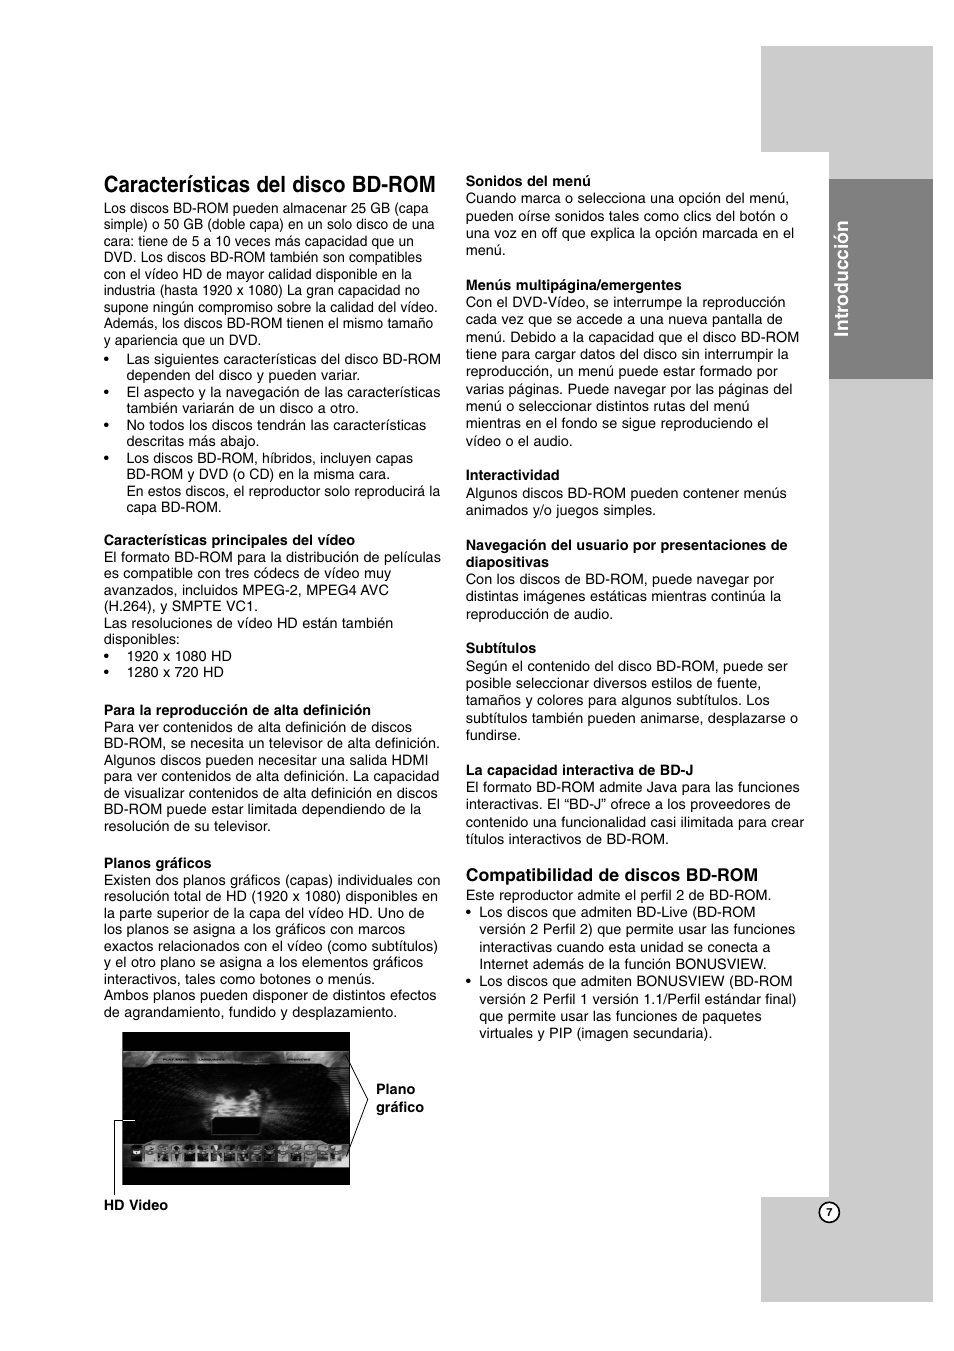 Características del disco bd-rom, Introducción | LG BD300 Manual del usuario | Página 7 / 40